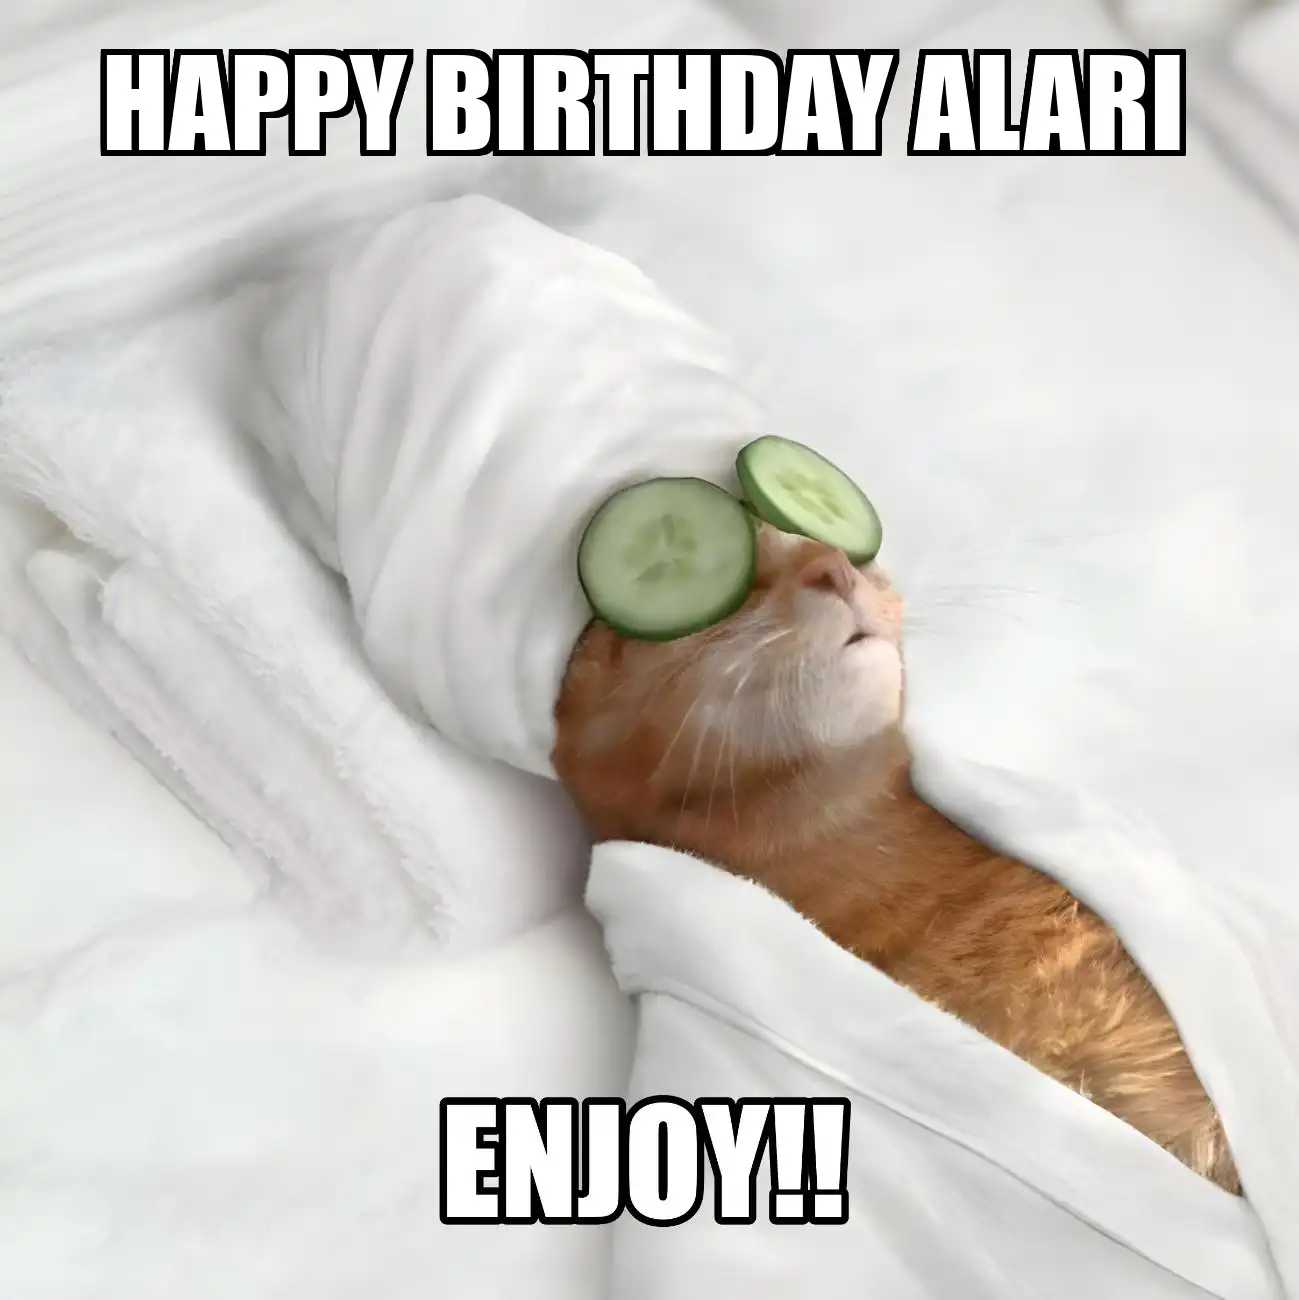 Happy Birthday Alari Enjoy Cat Meme